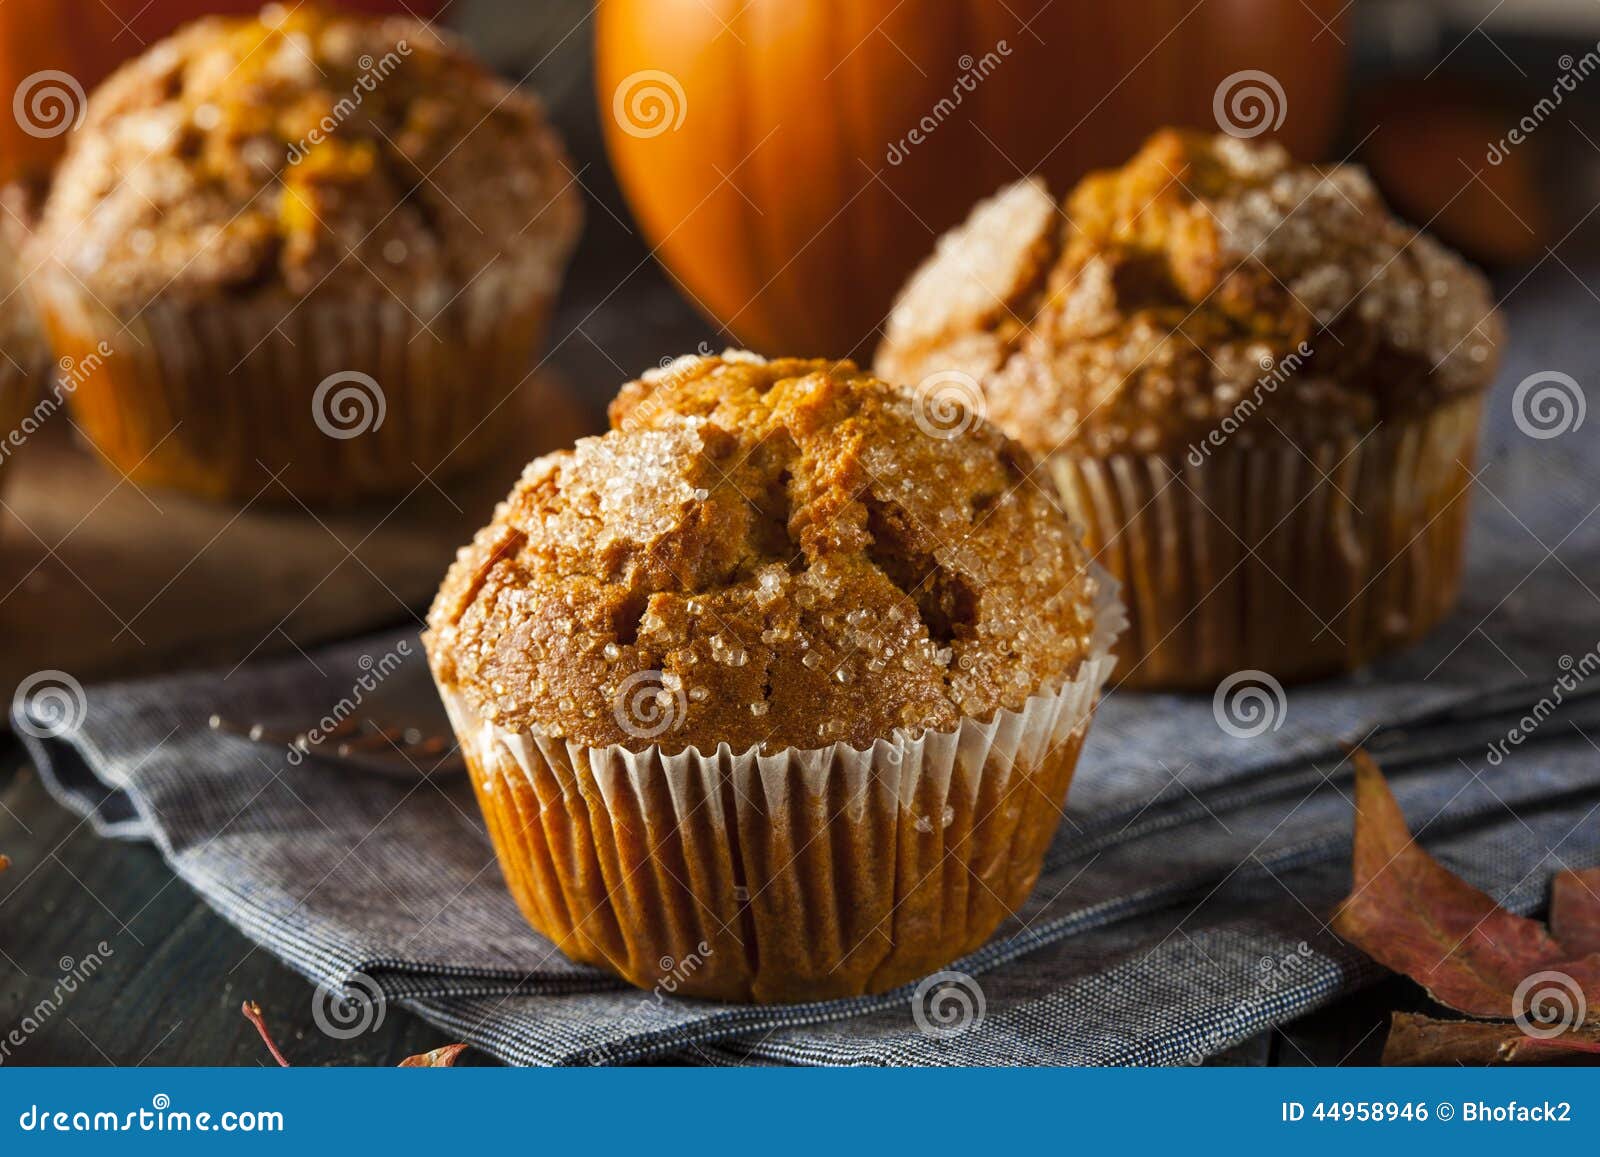 homemade autumn pumpkin muffin